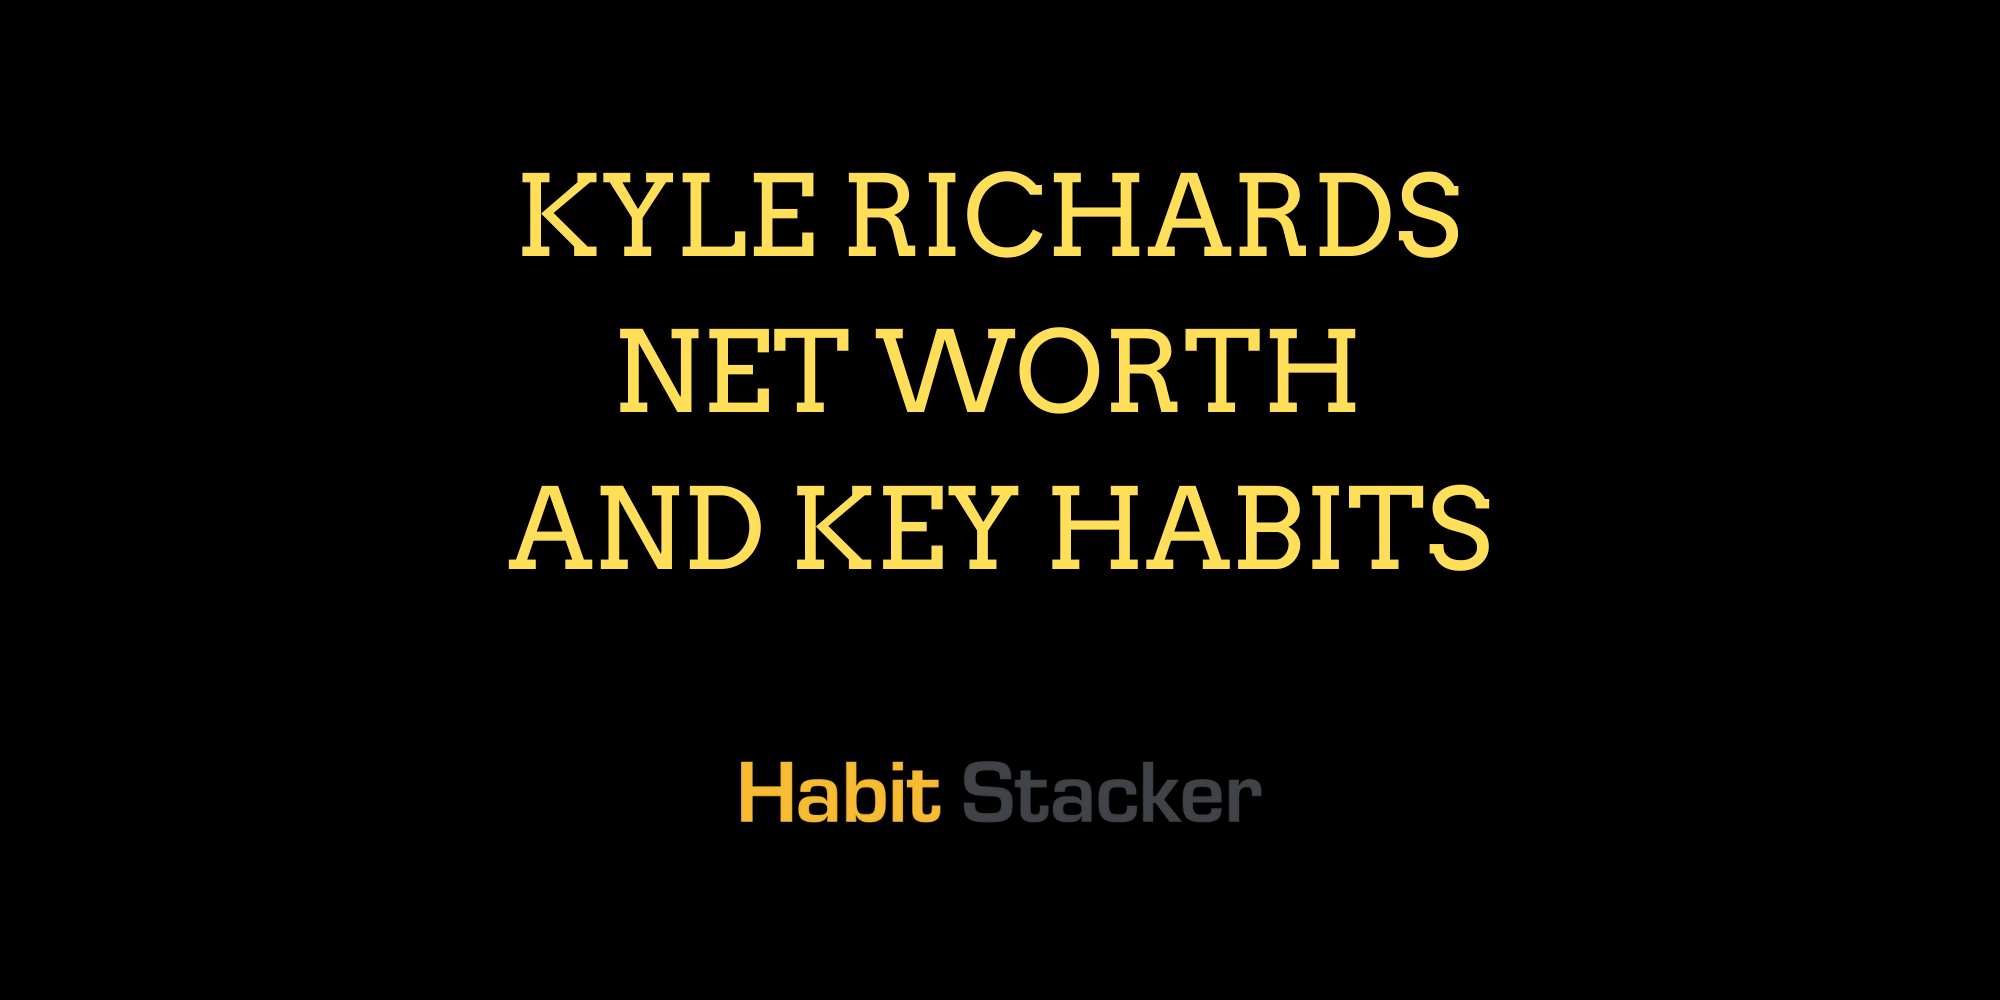 Kyle Richards Net Worth and Key Habits